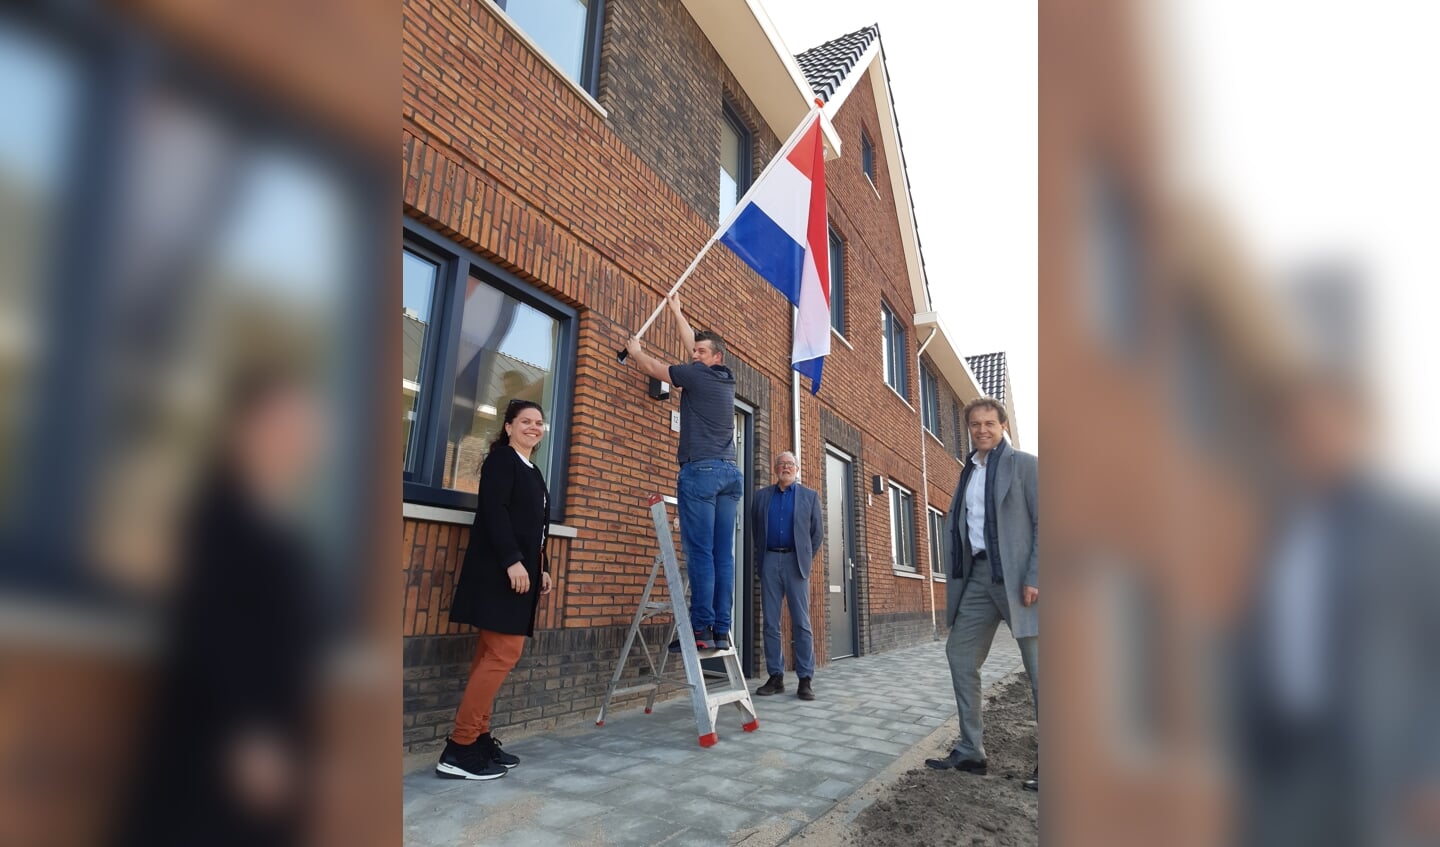 De vlag kan uit in Ewijk